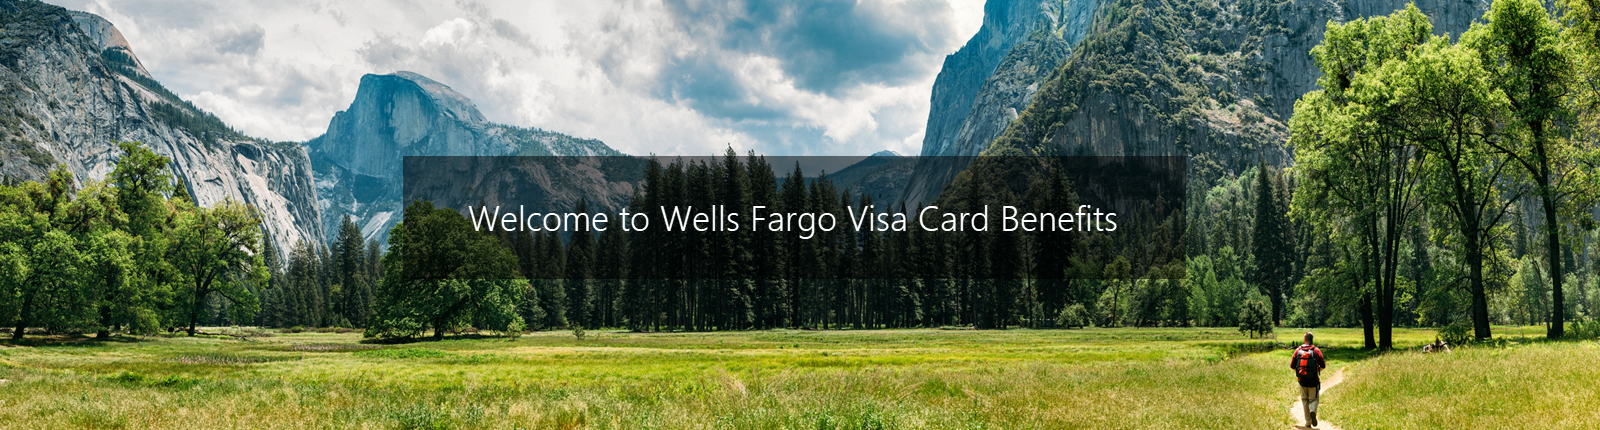 Welcome to Wells Fargo Visa Card Benefits